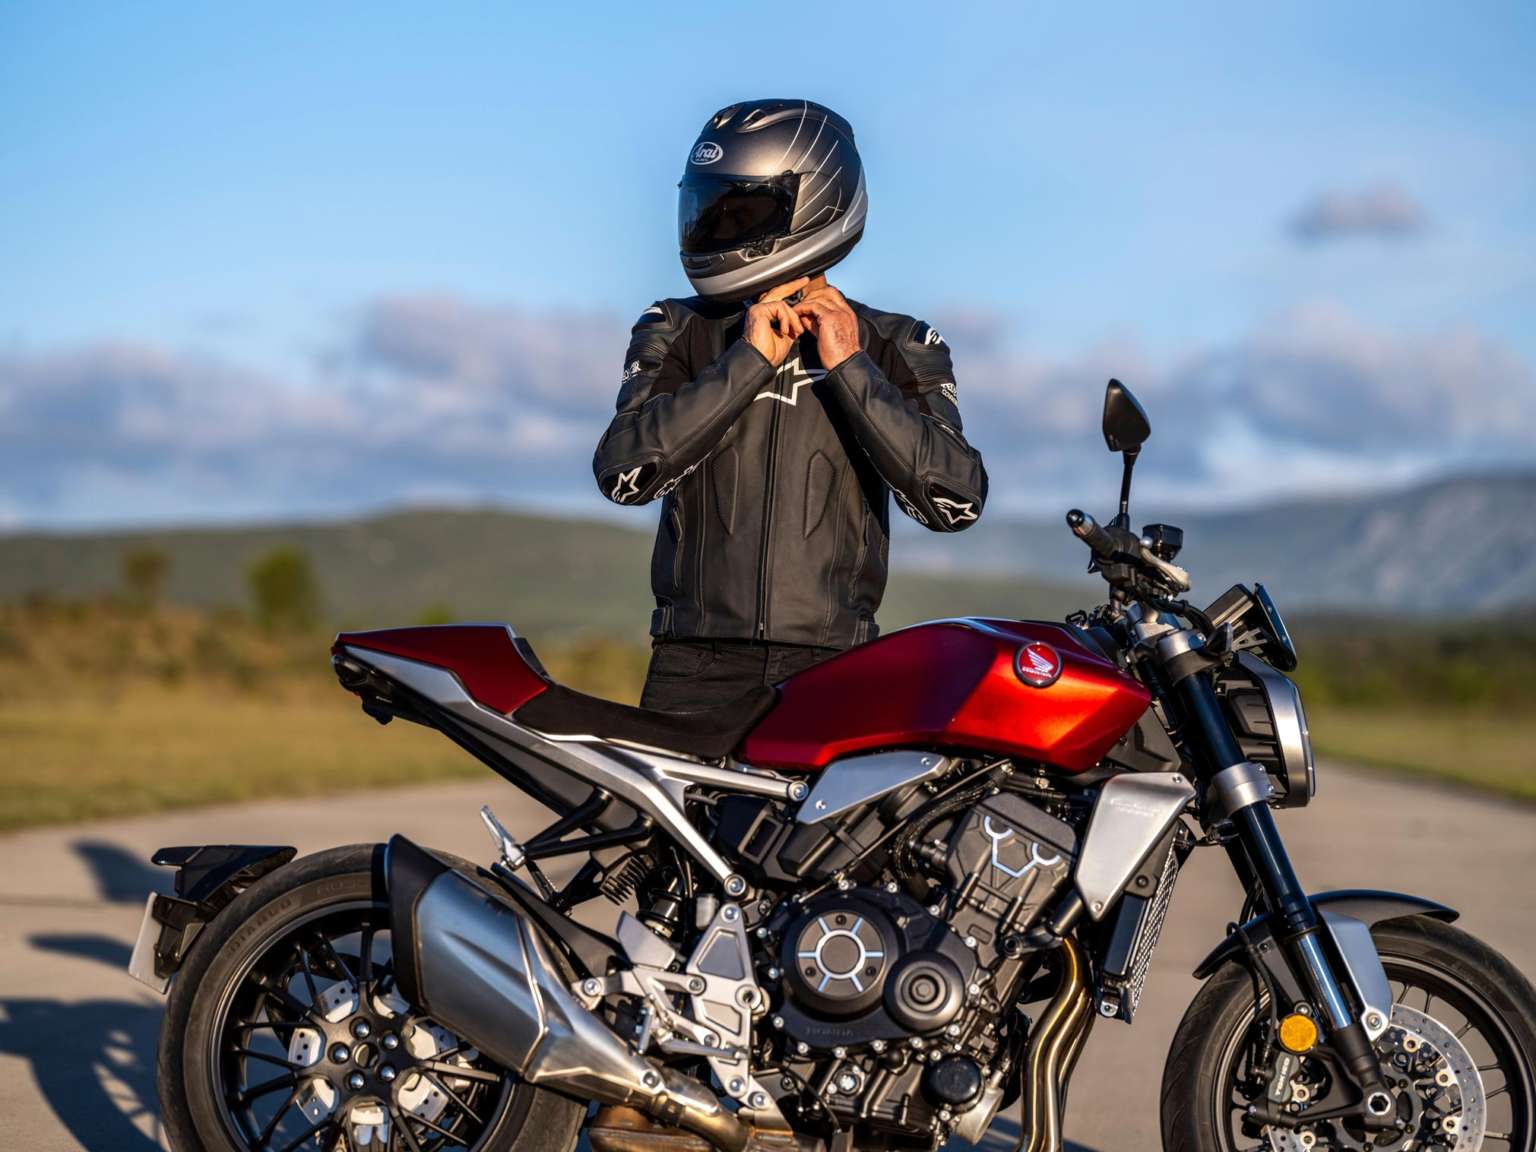 2021 Honda Motorcycle Guide • Total Motorcycle